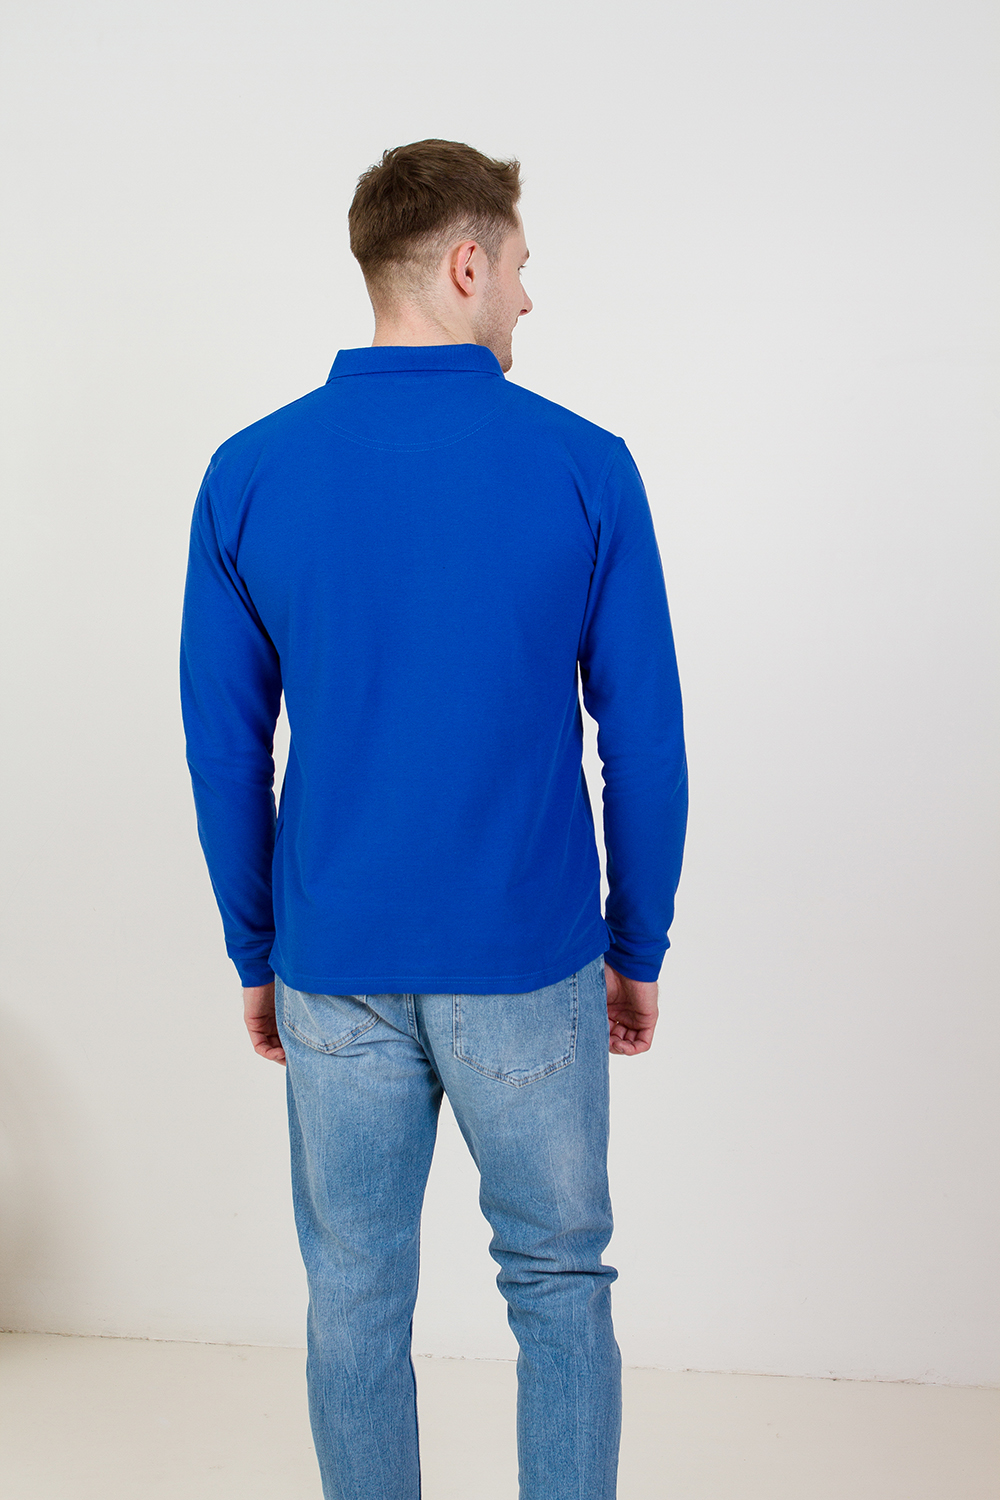 Рубашка поло мужская STAN длинный рукав хлопок/полиэстер 185, 04S, Бордовый (66) (42/XXS)